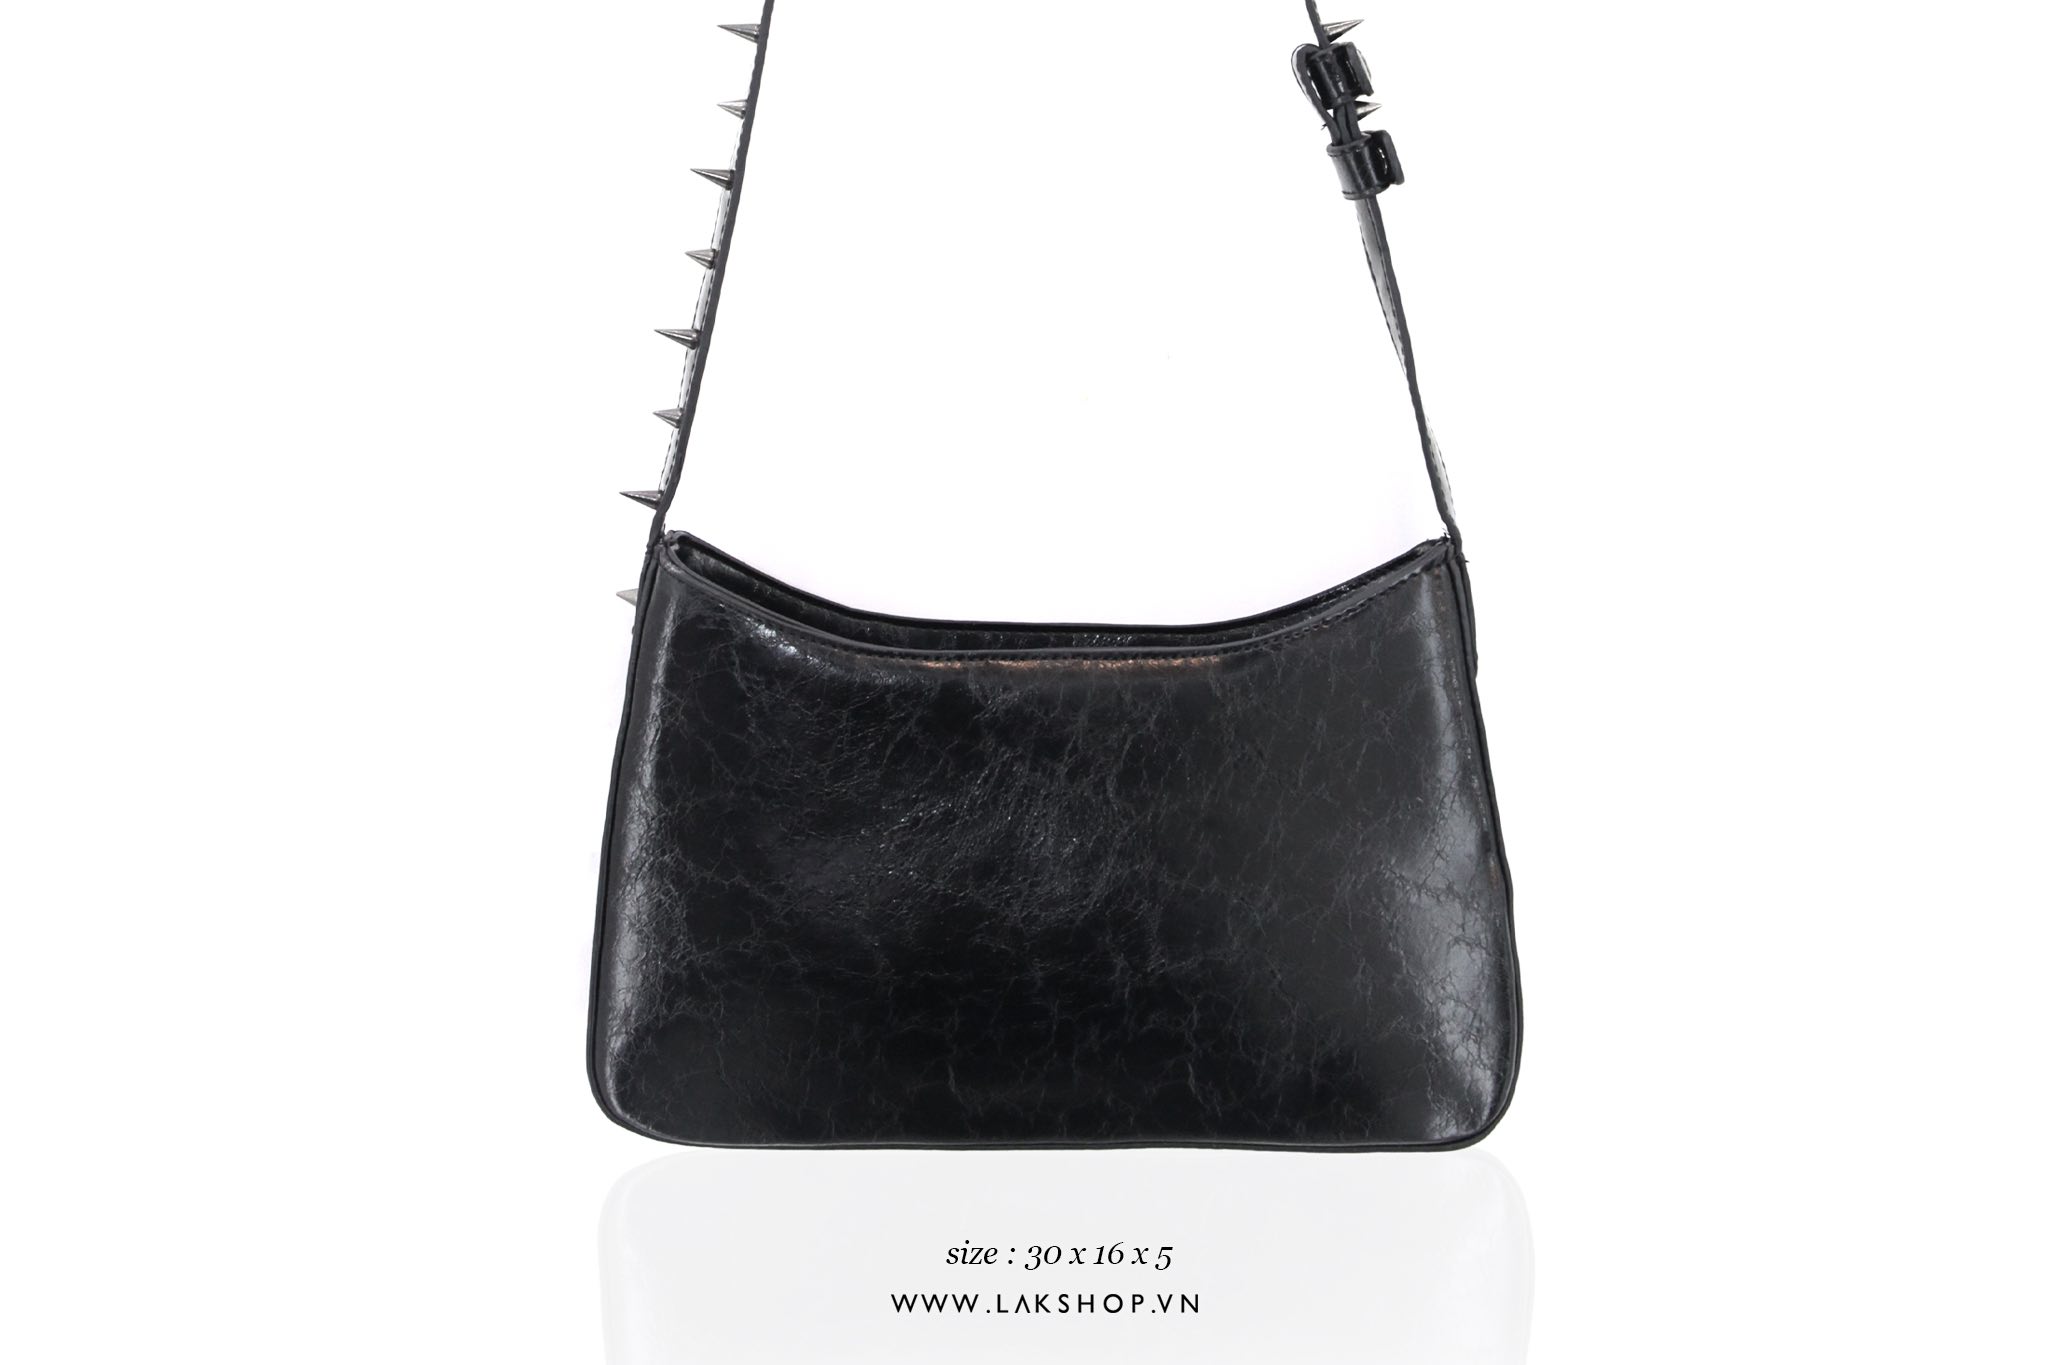 Black Studded Leather Shoulder Bag